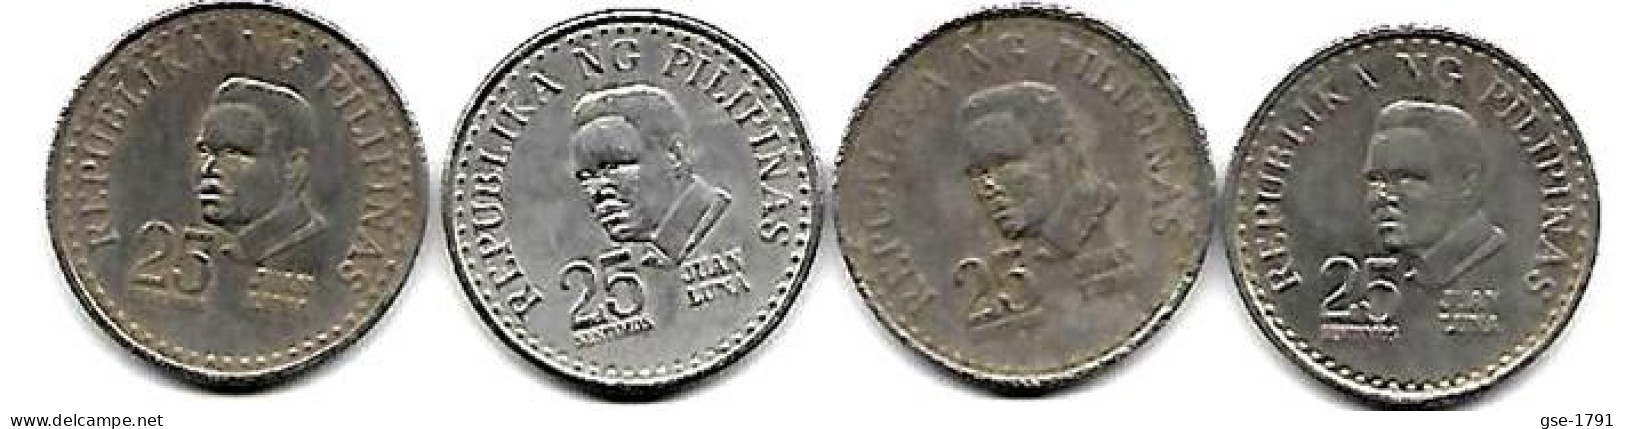 PHILIPPINES  Réforme Coinnage, 25 Sentimos, LUNA  KM 208  , 4 Pièces Série Complète  197 5à 1978  TTB - Filipinas